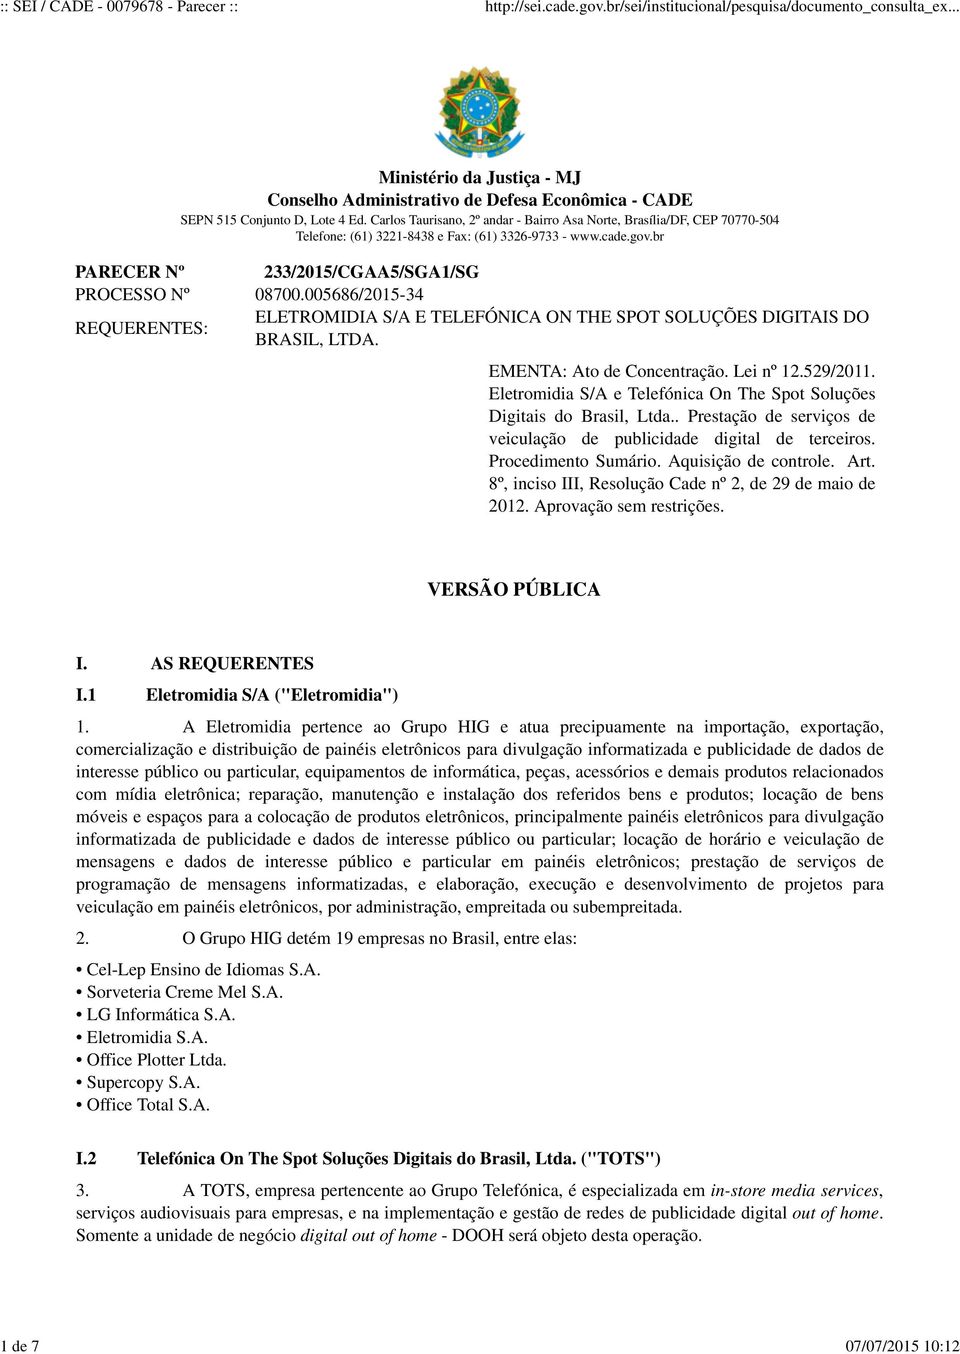 005686/2015-34 REQUERENTES: ELETROMIDIA S/A E TELEFÓNICA ON THE SPOT SOLUÇÕES DIGITAIS DO BRASIL, LTDA. EMENTA: Ato de Concentração. Lei nº 12.529/2011.